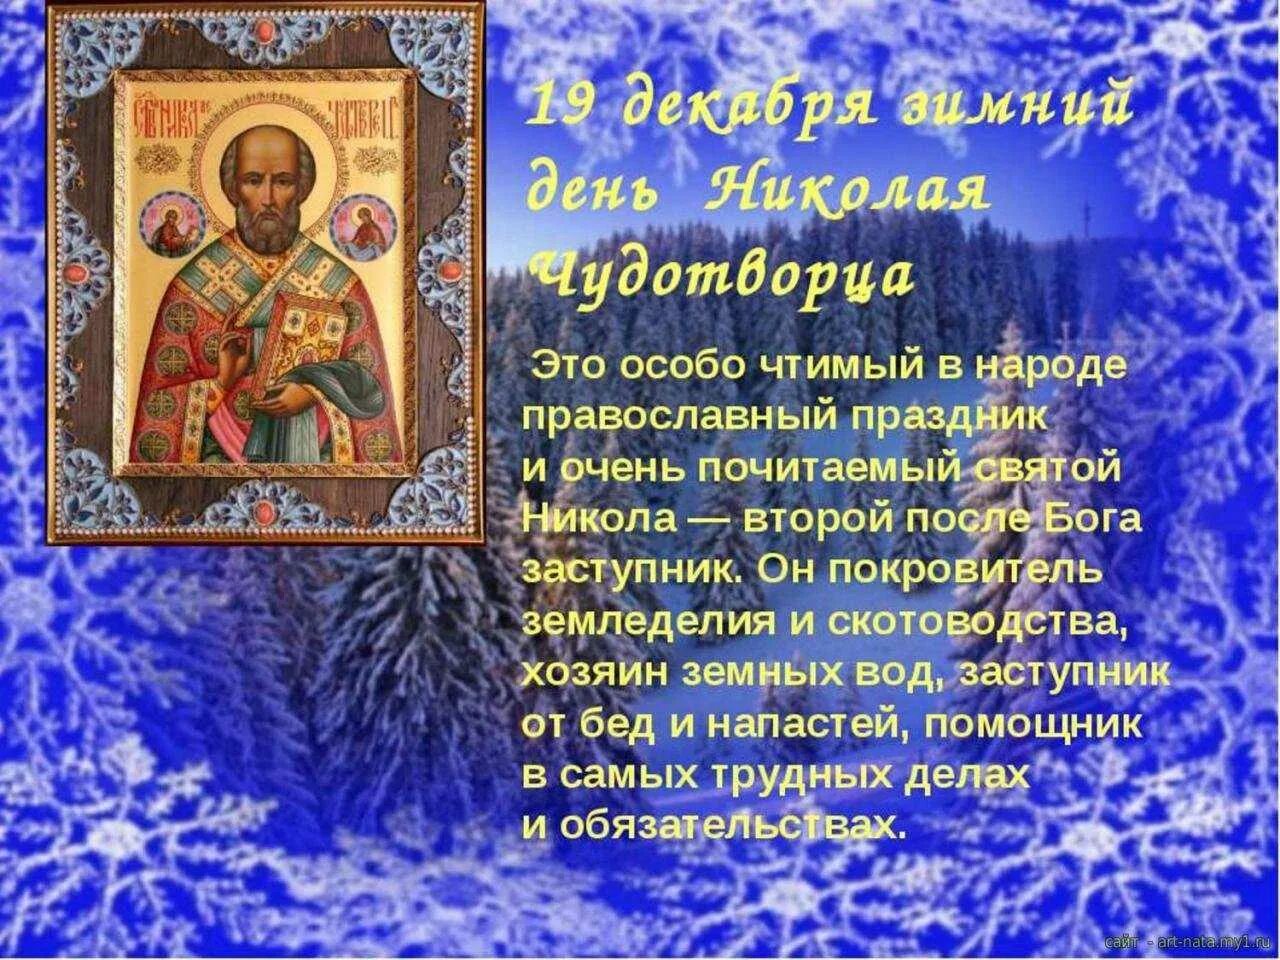 19 Декабря праздник Николая Чудотворца Православие. События 19 декабря